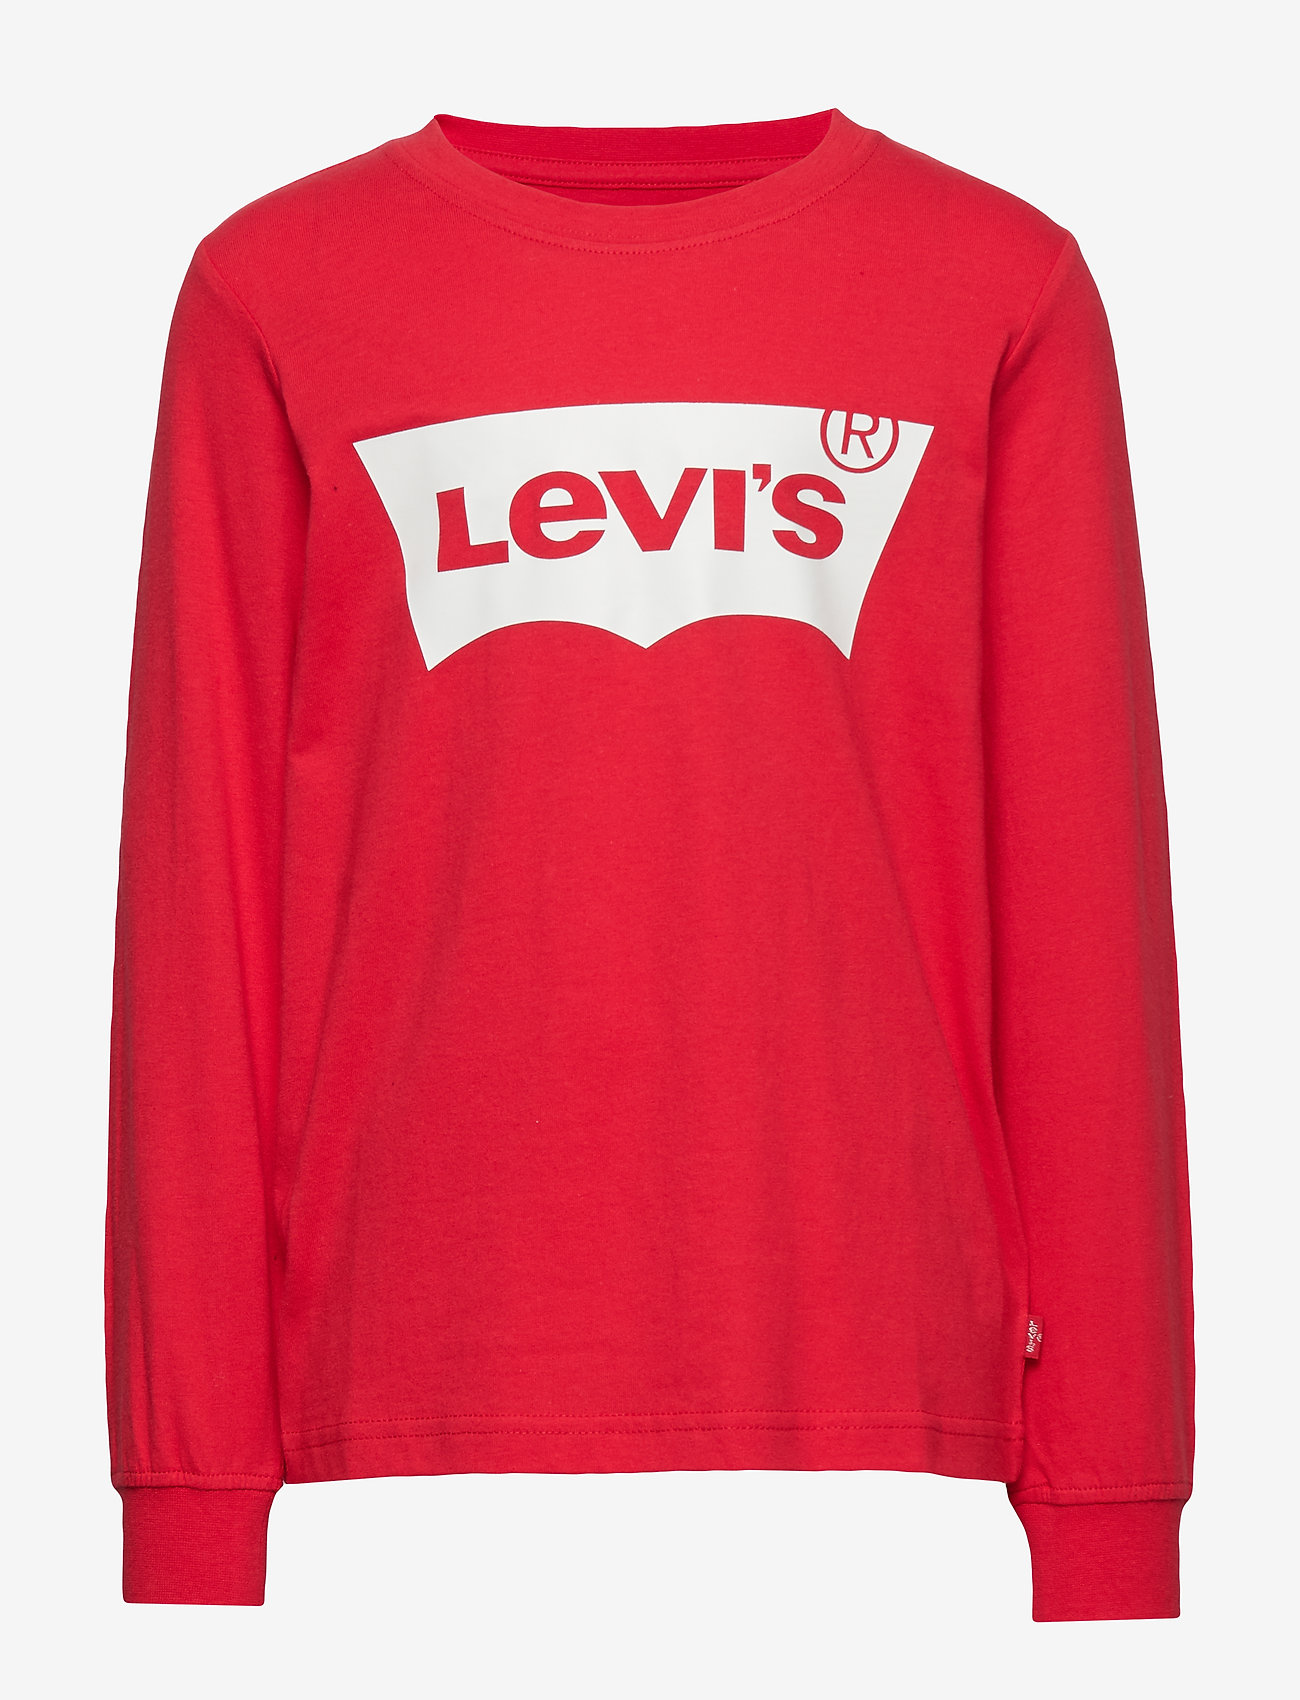 Levi's - Levi's® Long Sleeve Batwing Tee - marškinėliai ilgomis rankovėmis - super red - 0